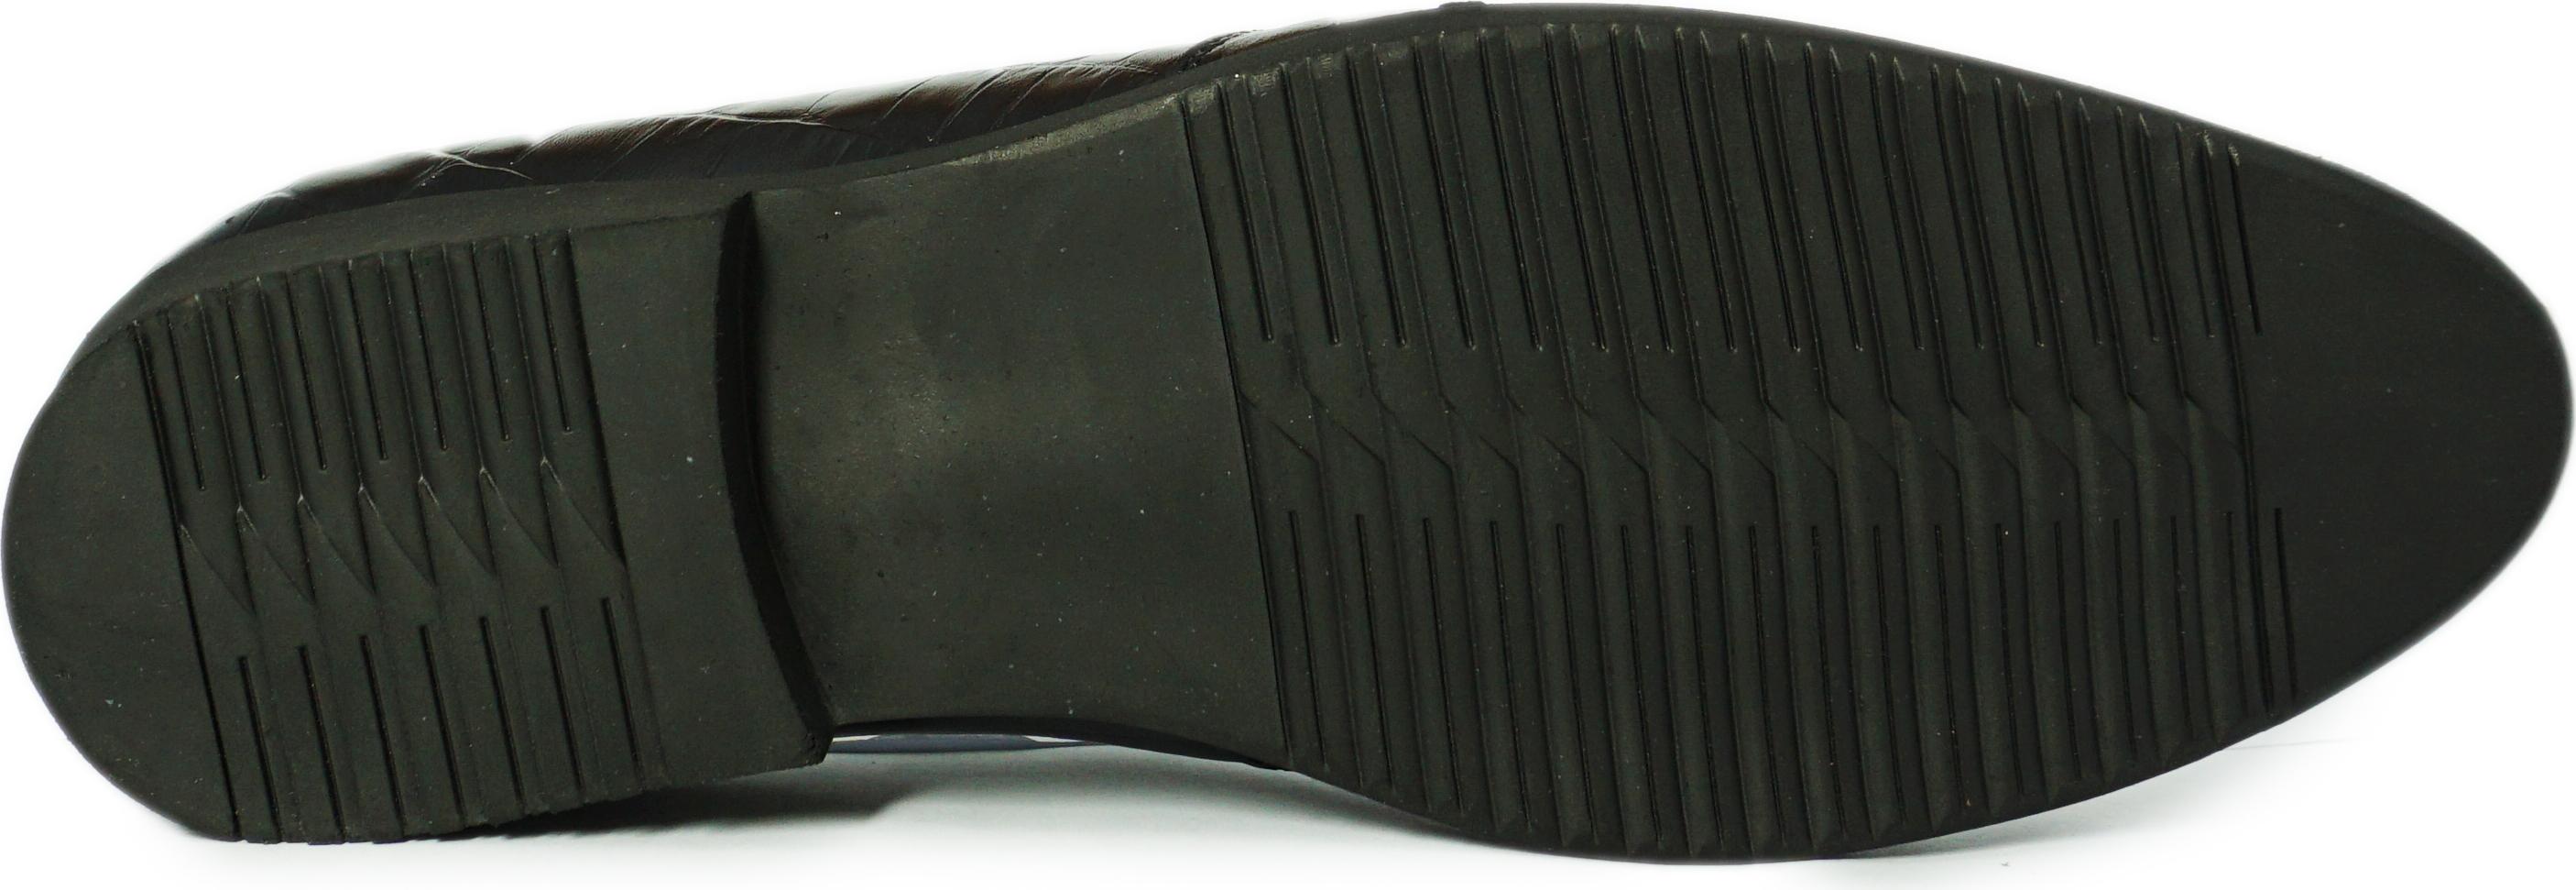 Giày Tây Nam Cao Cấp Phong Cách Trẻ Trung Năng Động Lịch lãm, Giày Da Nam Đi Làm Đi Chơi HS02